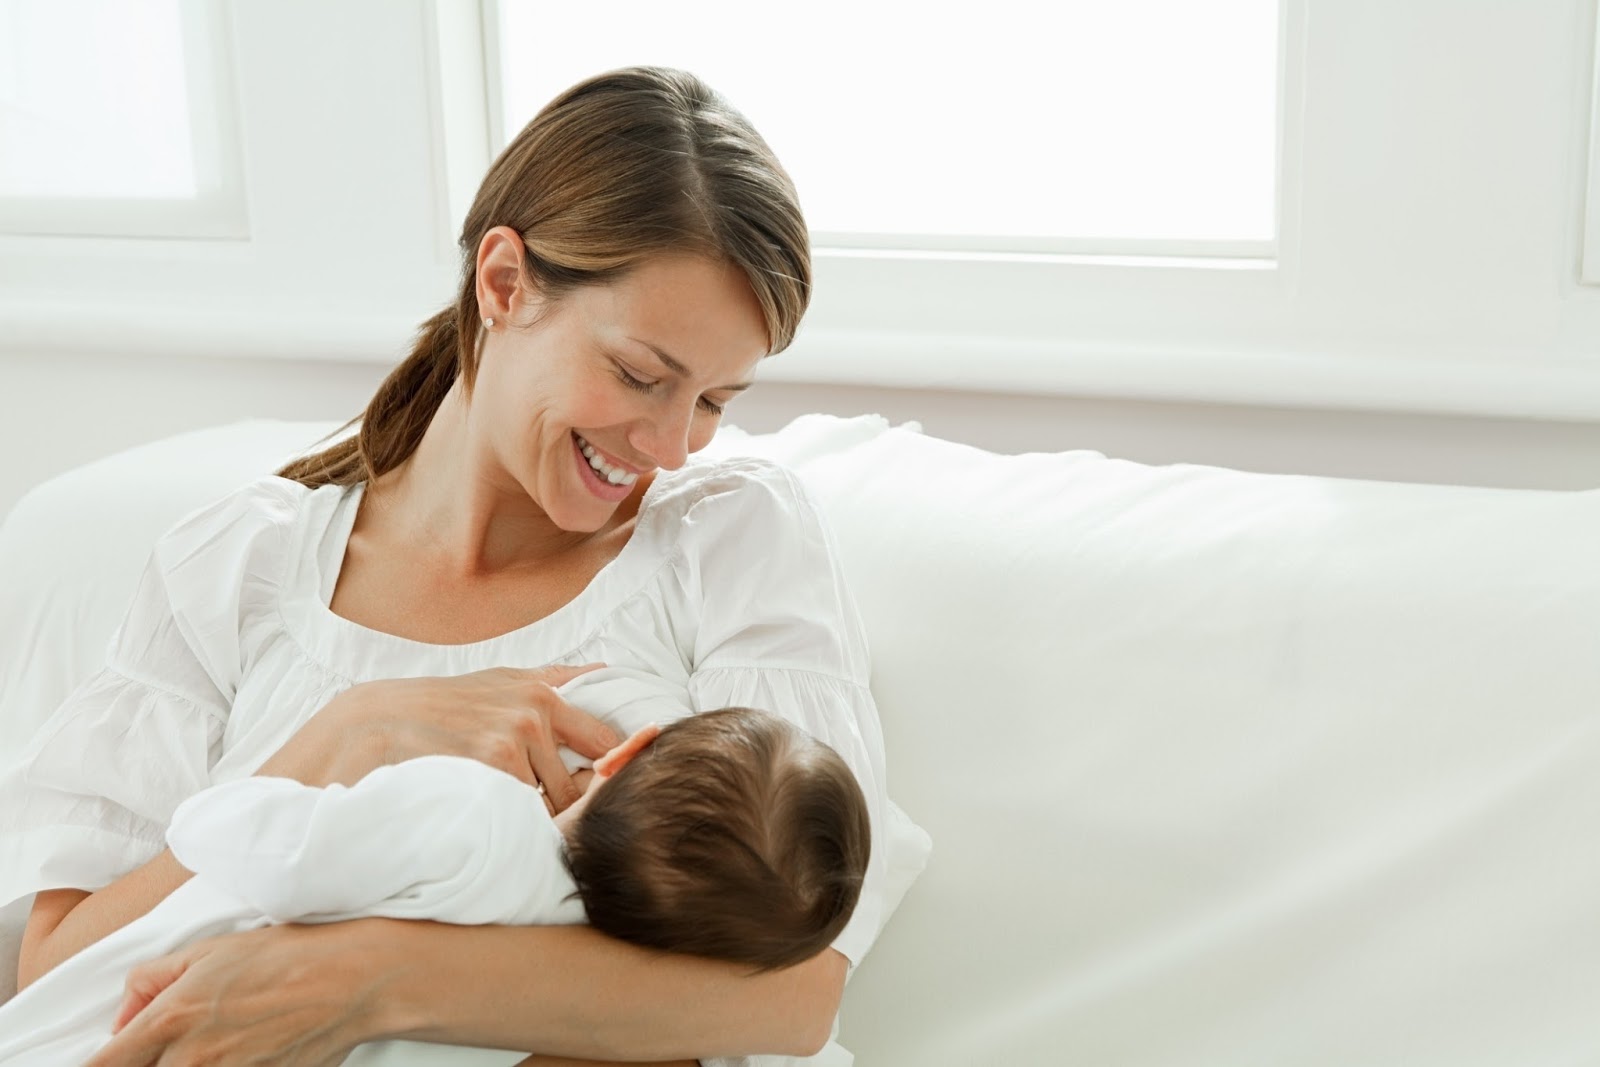 Ο θηλασμός ασπίδα προστασίας έναντι της παιδικής λευχαιμίας